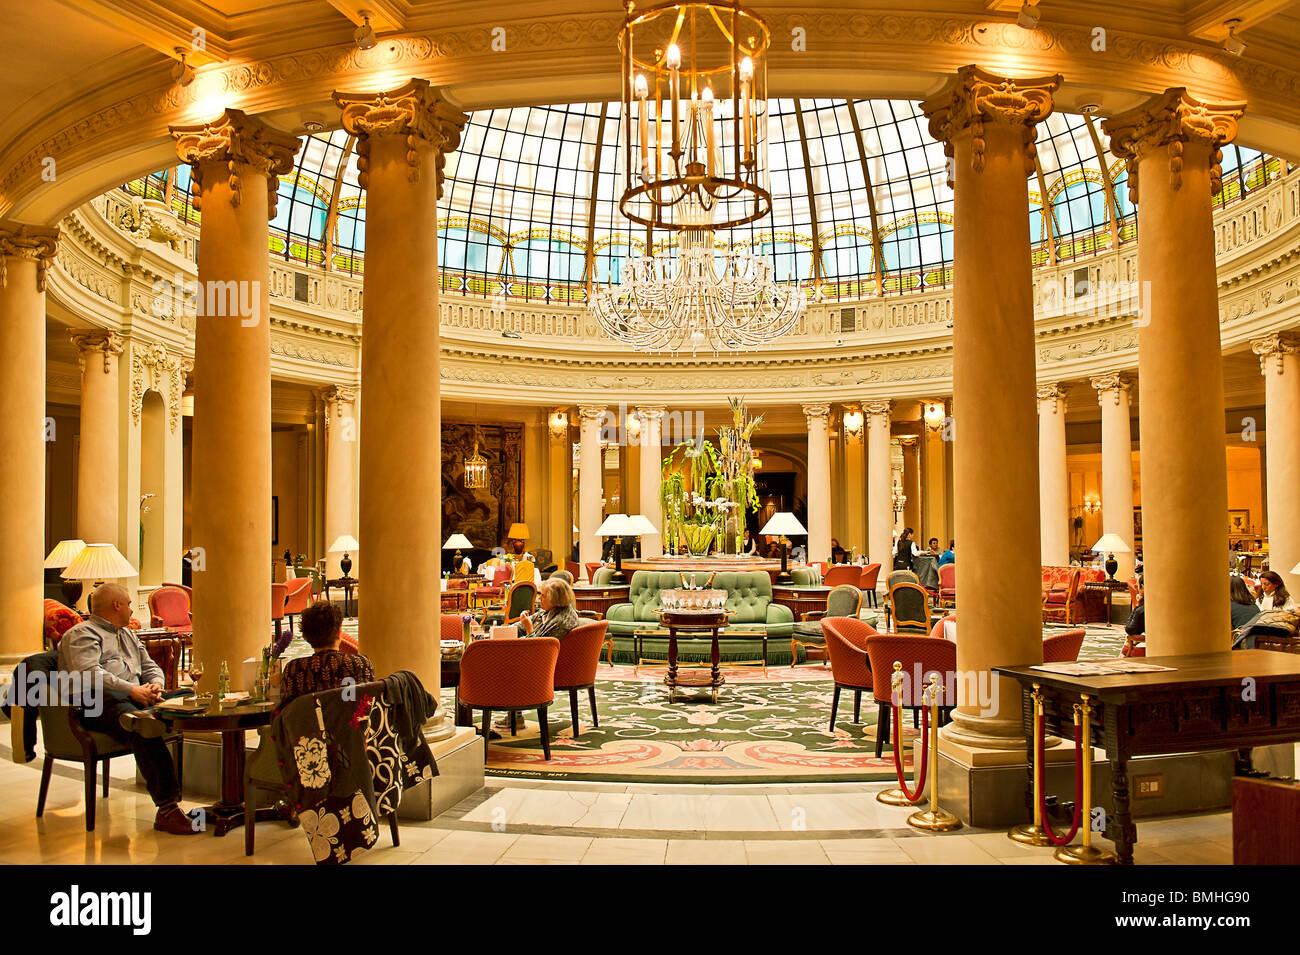 La Rotunda, Westin Palace Hotel, Madrid, Spain Stock Photo